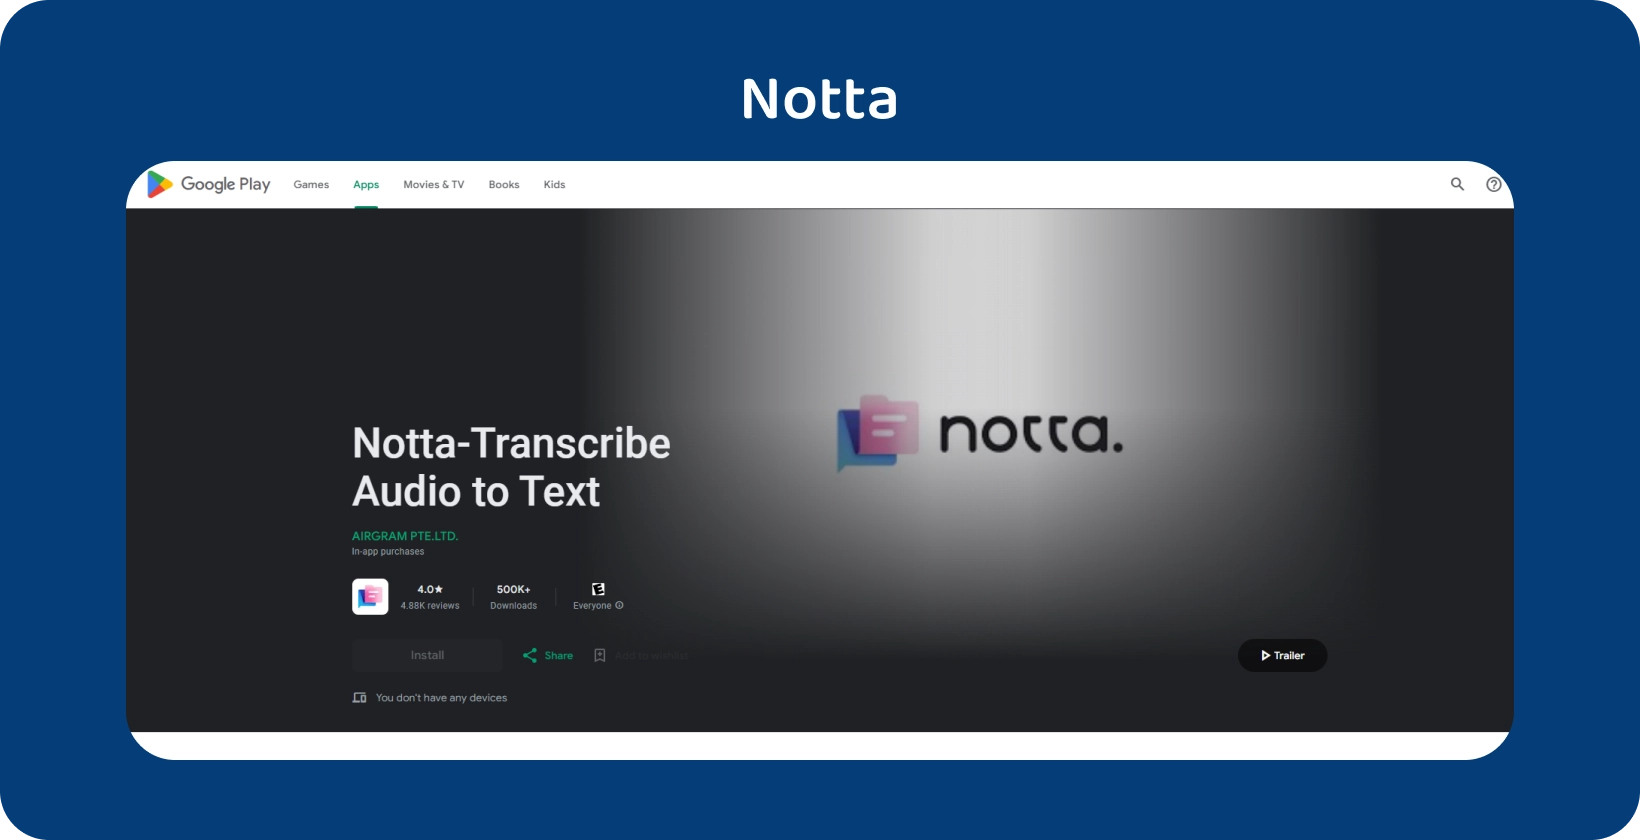 Додаток Notta.ai на Google Play, демонструючи свою здатність точно транскрибувати аудіо в текст на Android.